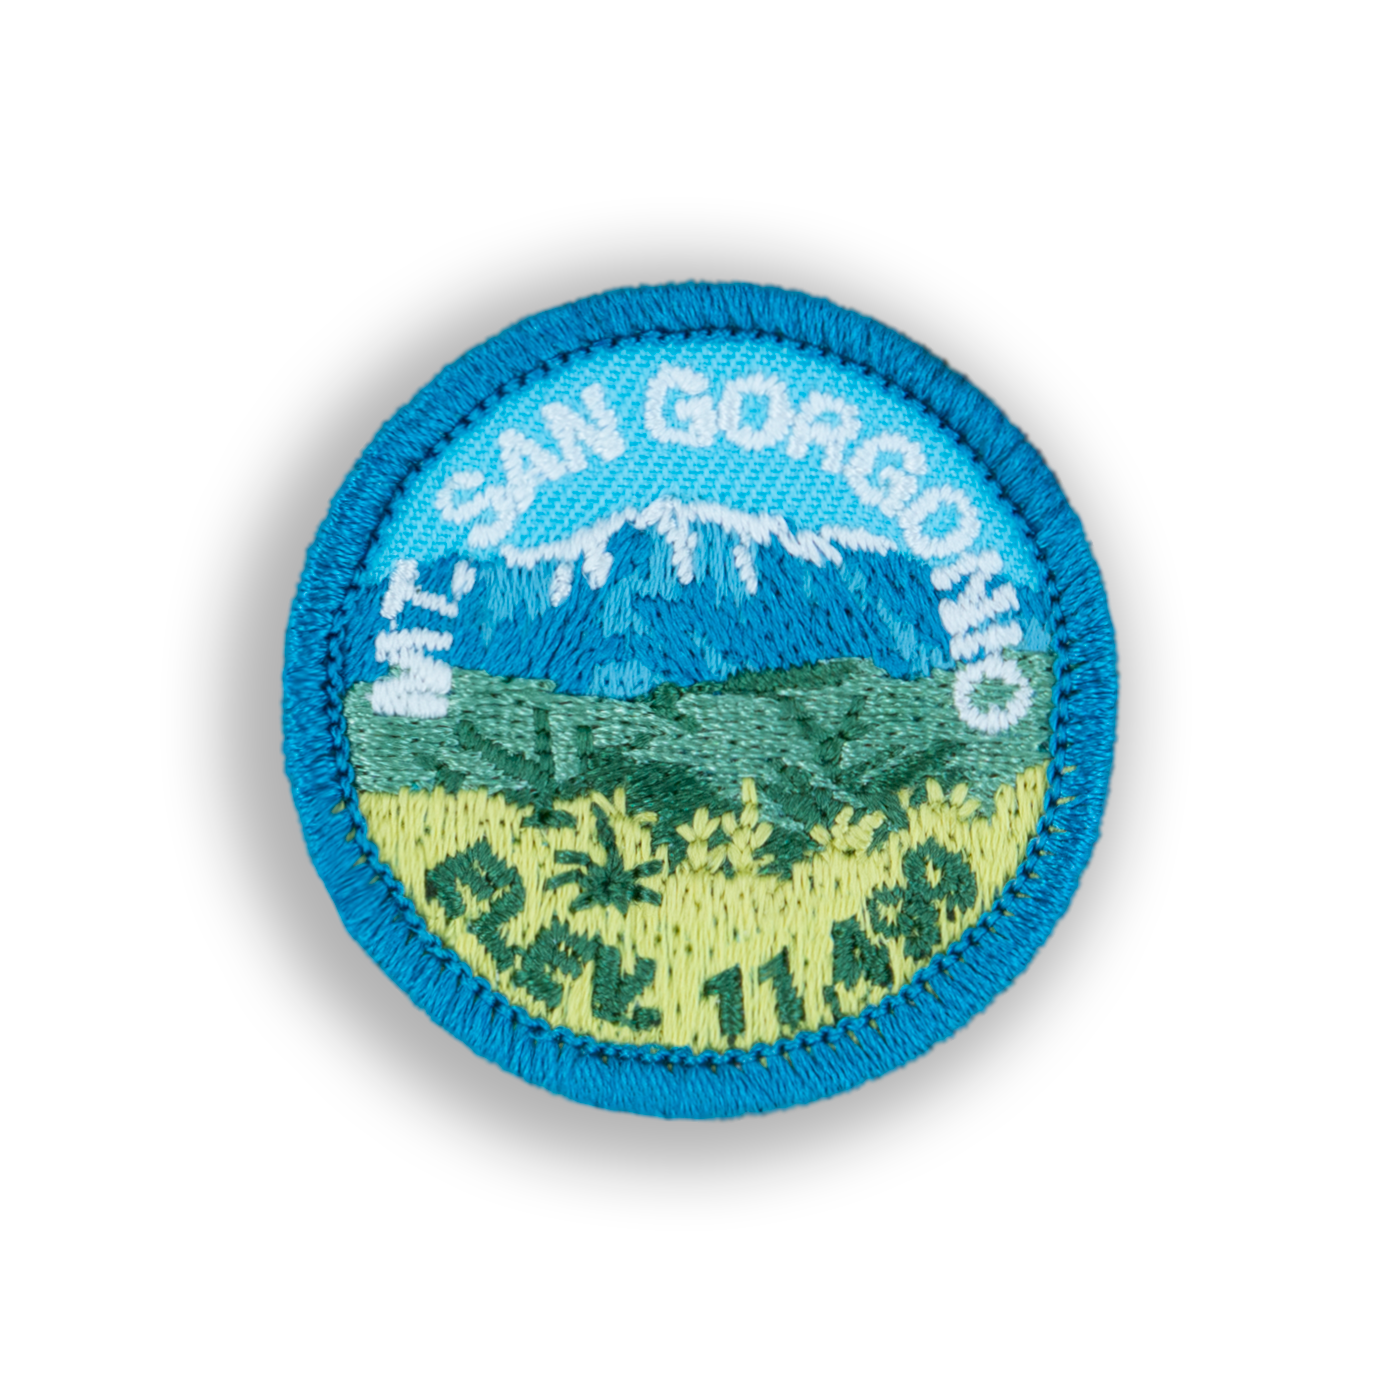 Mount San Gorgonio Patch | Demerit Wear - Fake Merit Badges